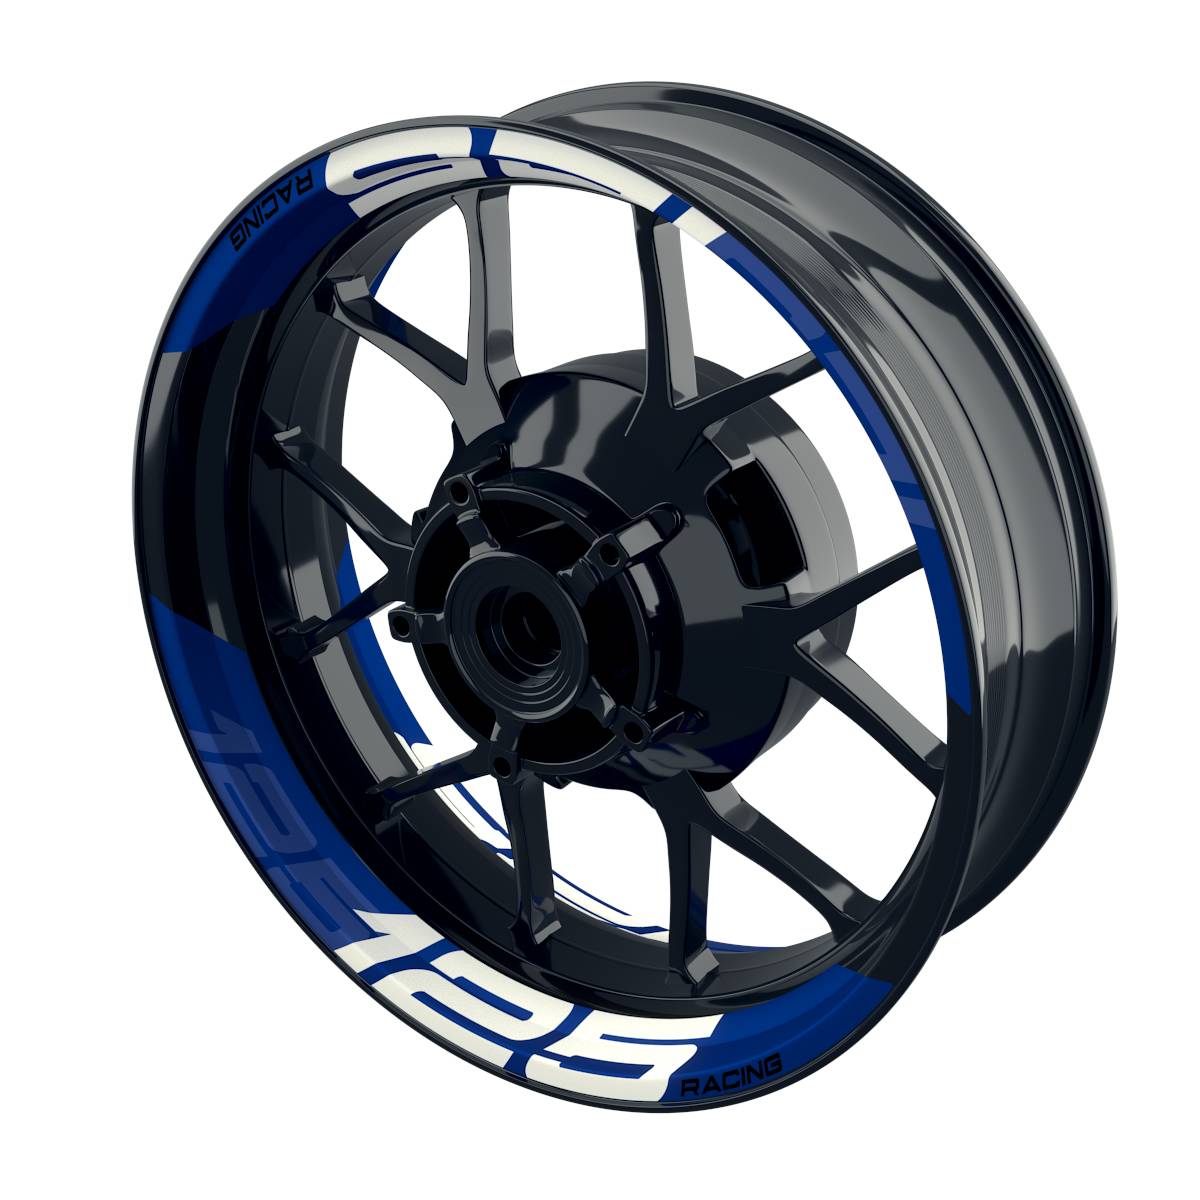 Rim Decals 125 Racing einfarbig V2 Wheelsticker Premium splitted